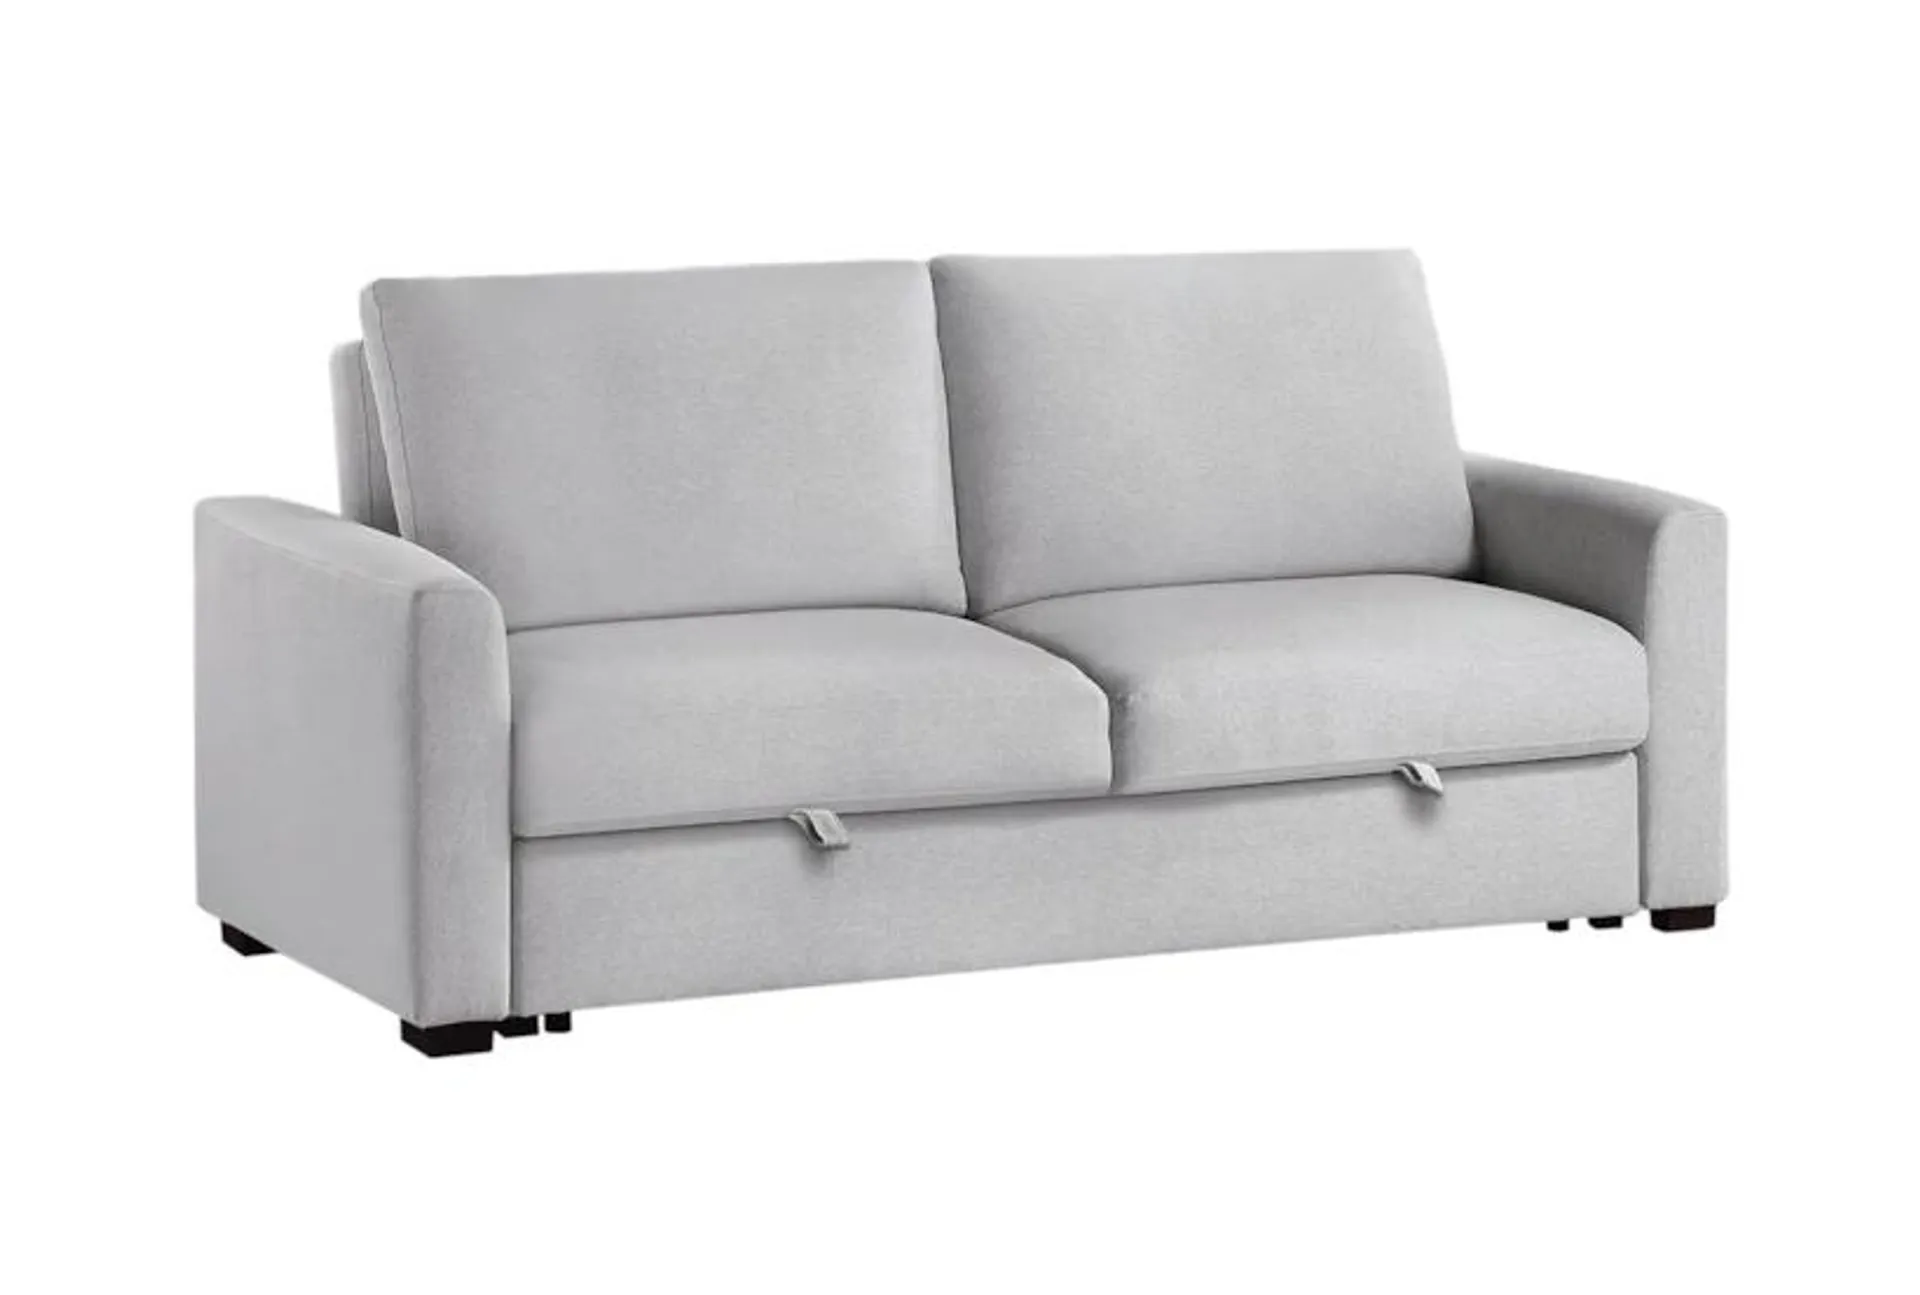 Hancock Grey 77" Convertible Sleeper Sofa Bed